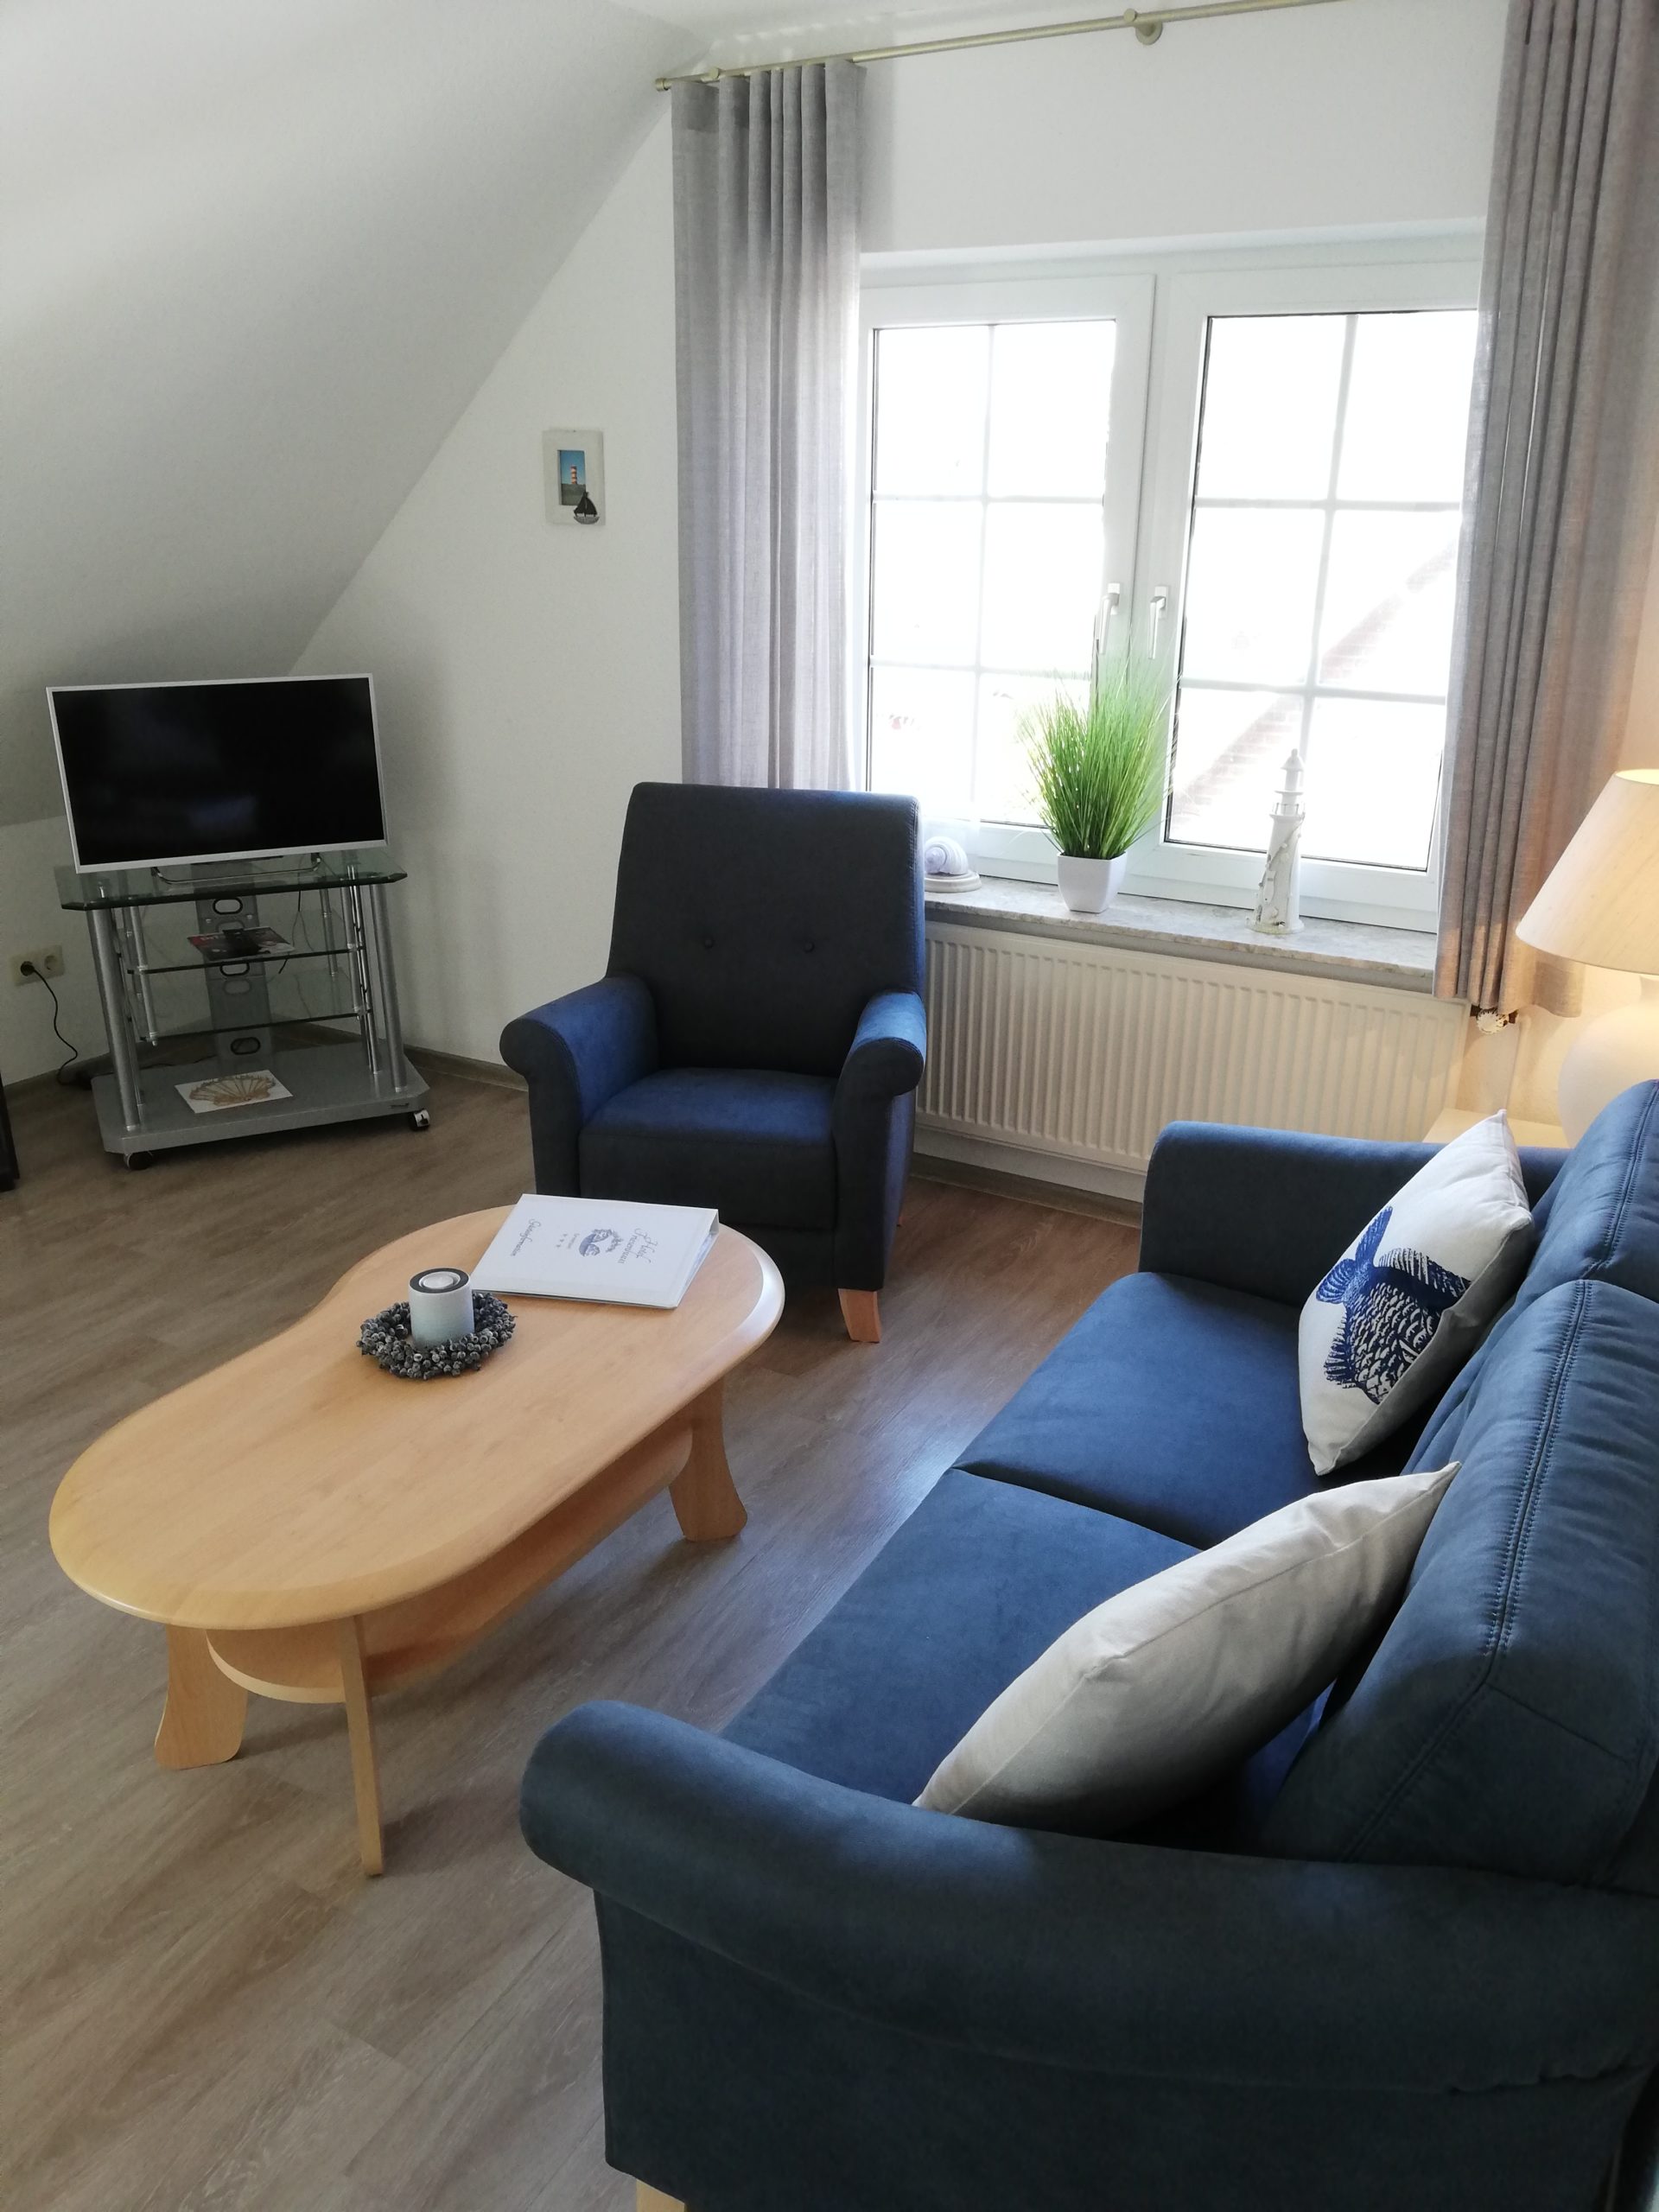 Wohnbereich mit Sessel, Doppelsofa und Fernseher